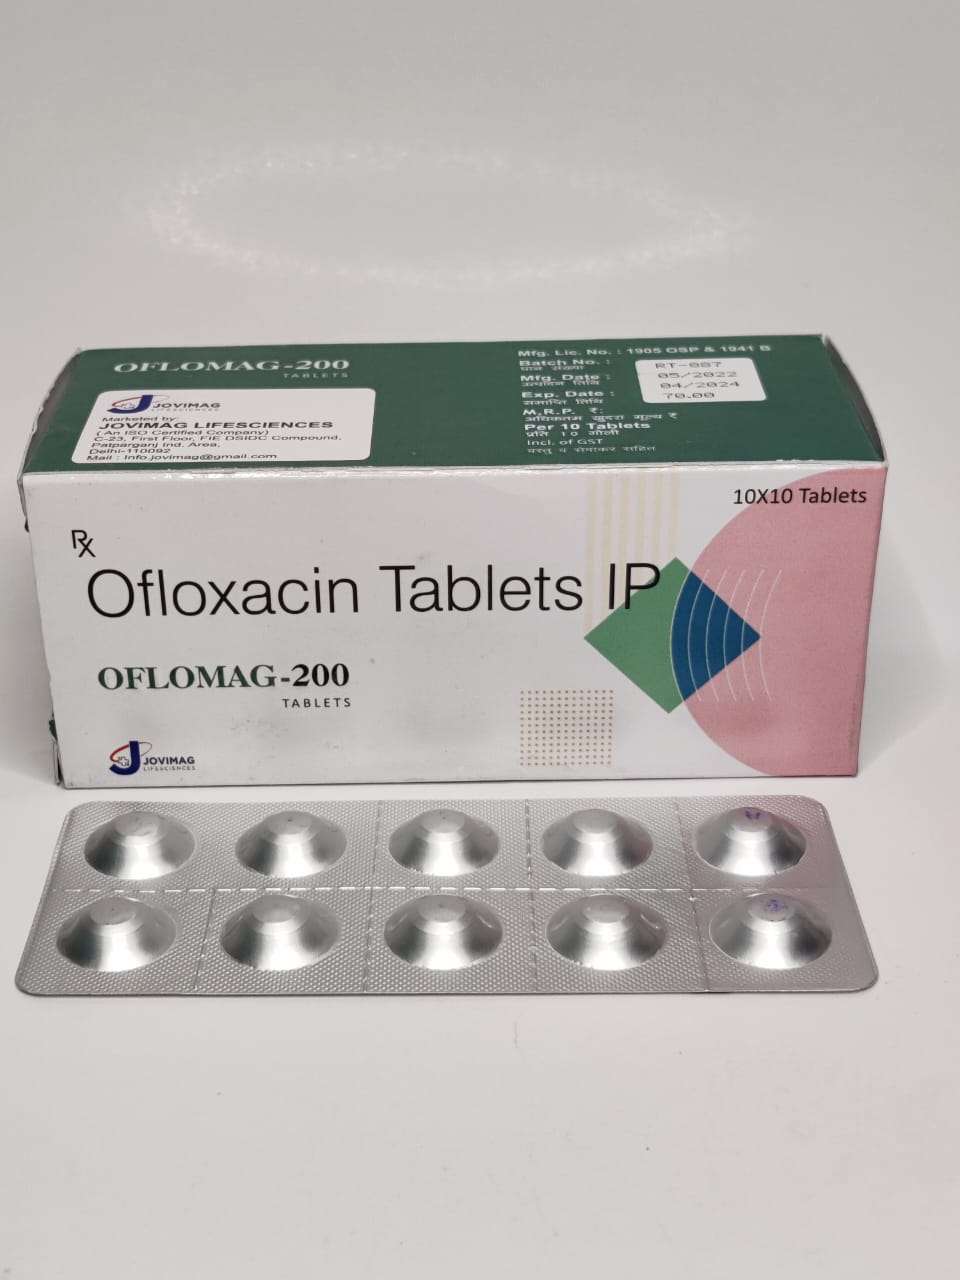 ofloxacin 200 mg